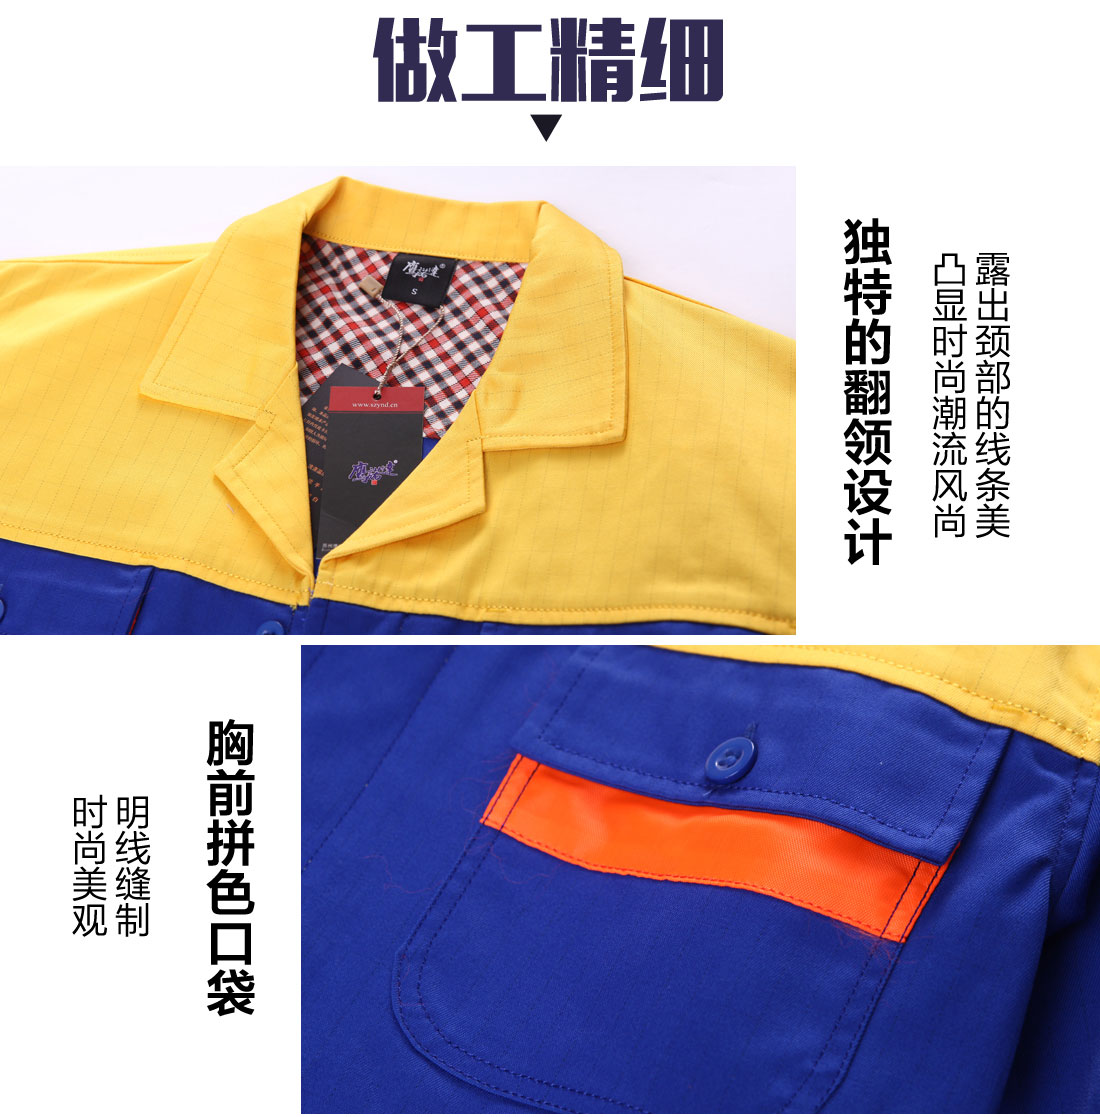 中蓝拼黄色工作服款式细节